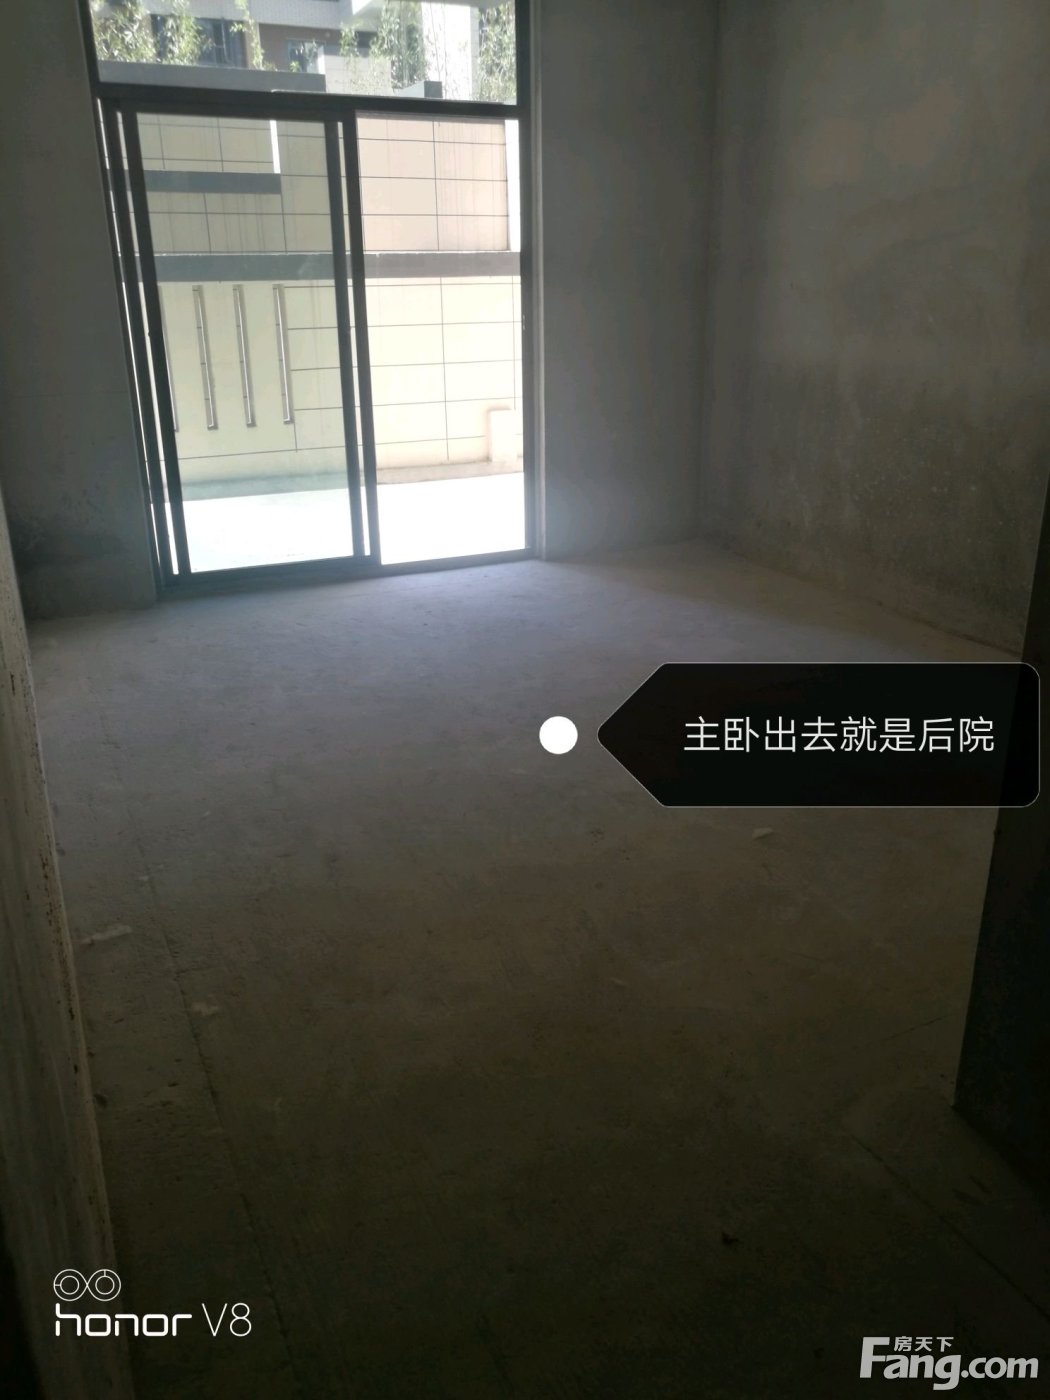 置业顾问杨彪发布了一条梧桐邑·八合院的抖房